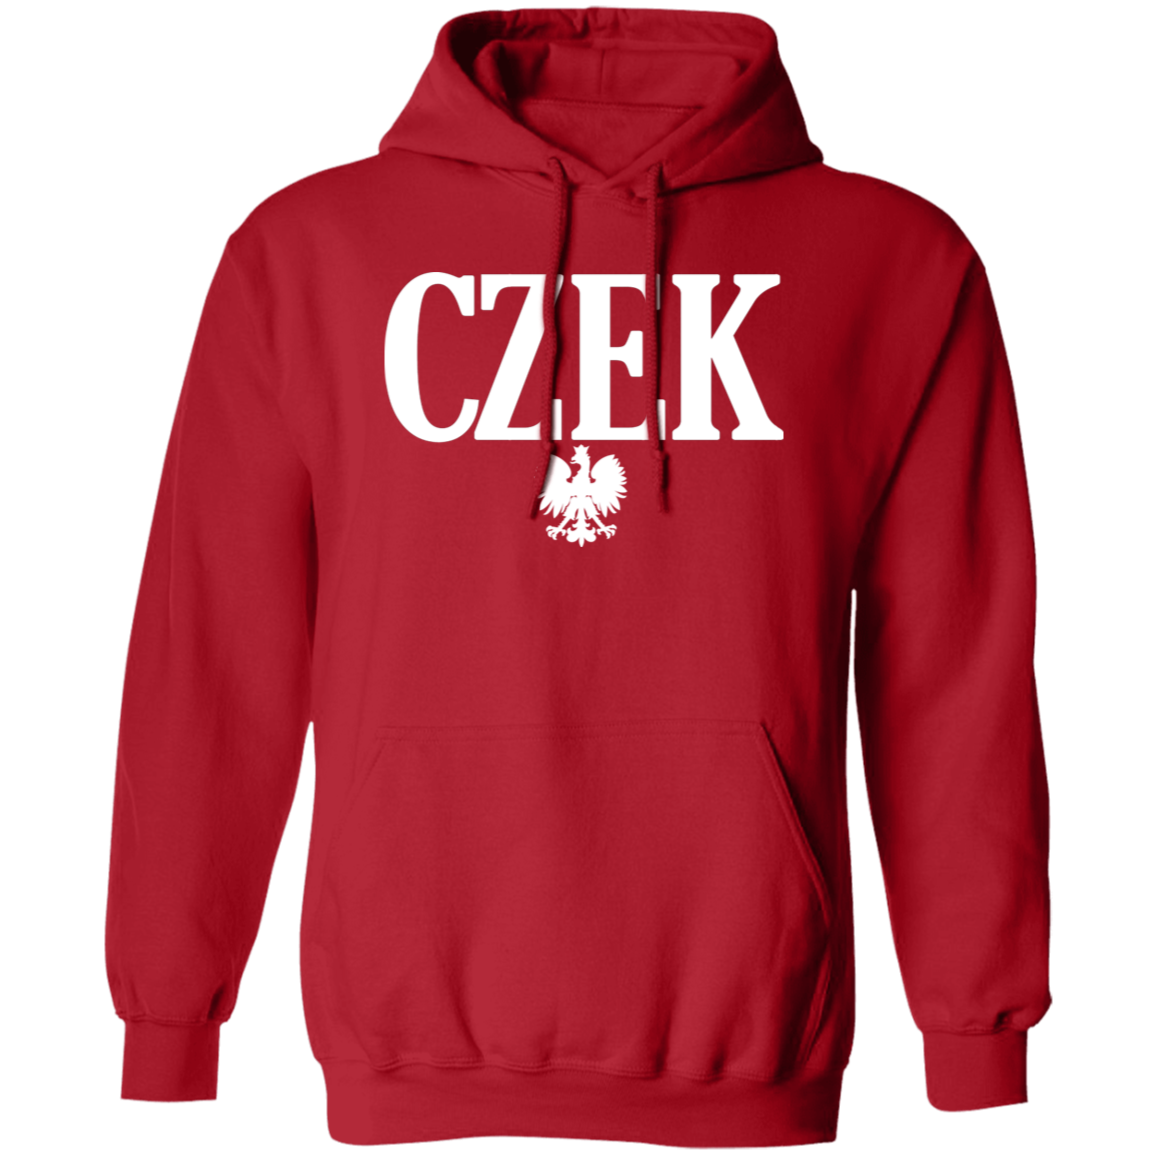 CZEK Polish Surname Ending Apparel CustomCat G185 Pullover Hoodie Red S